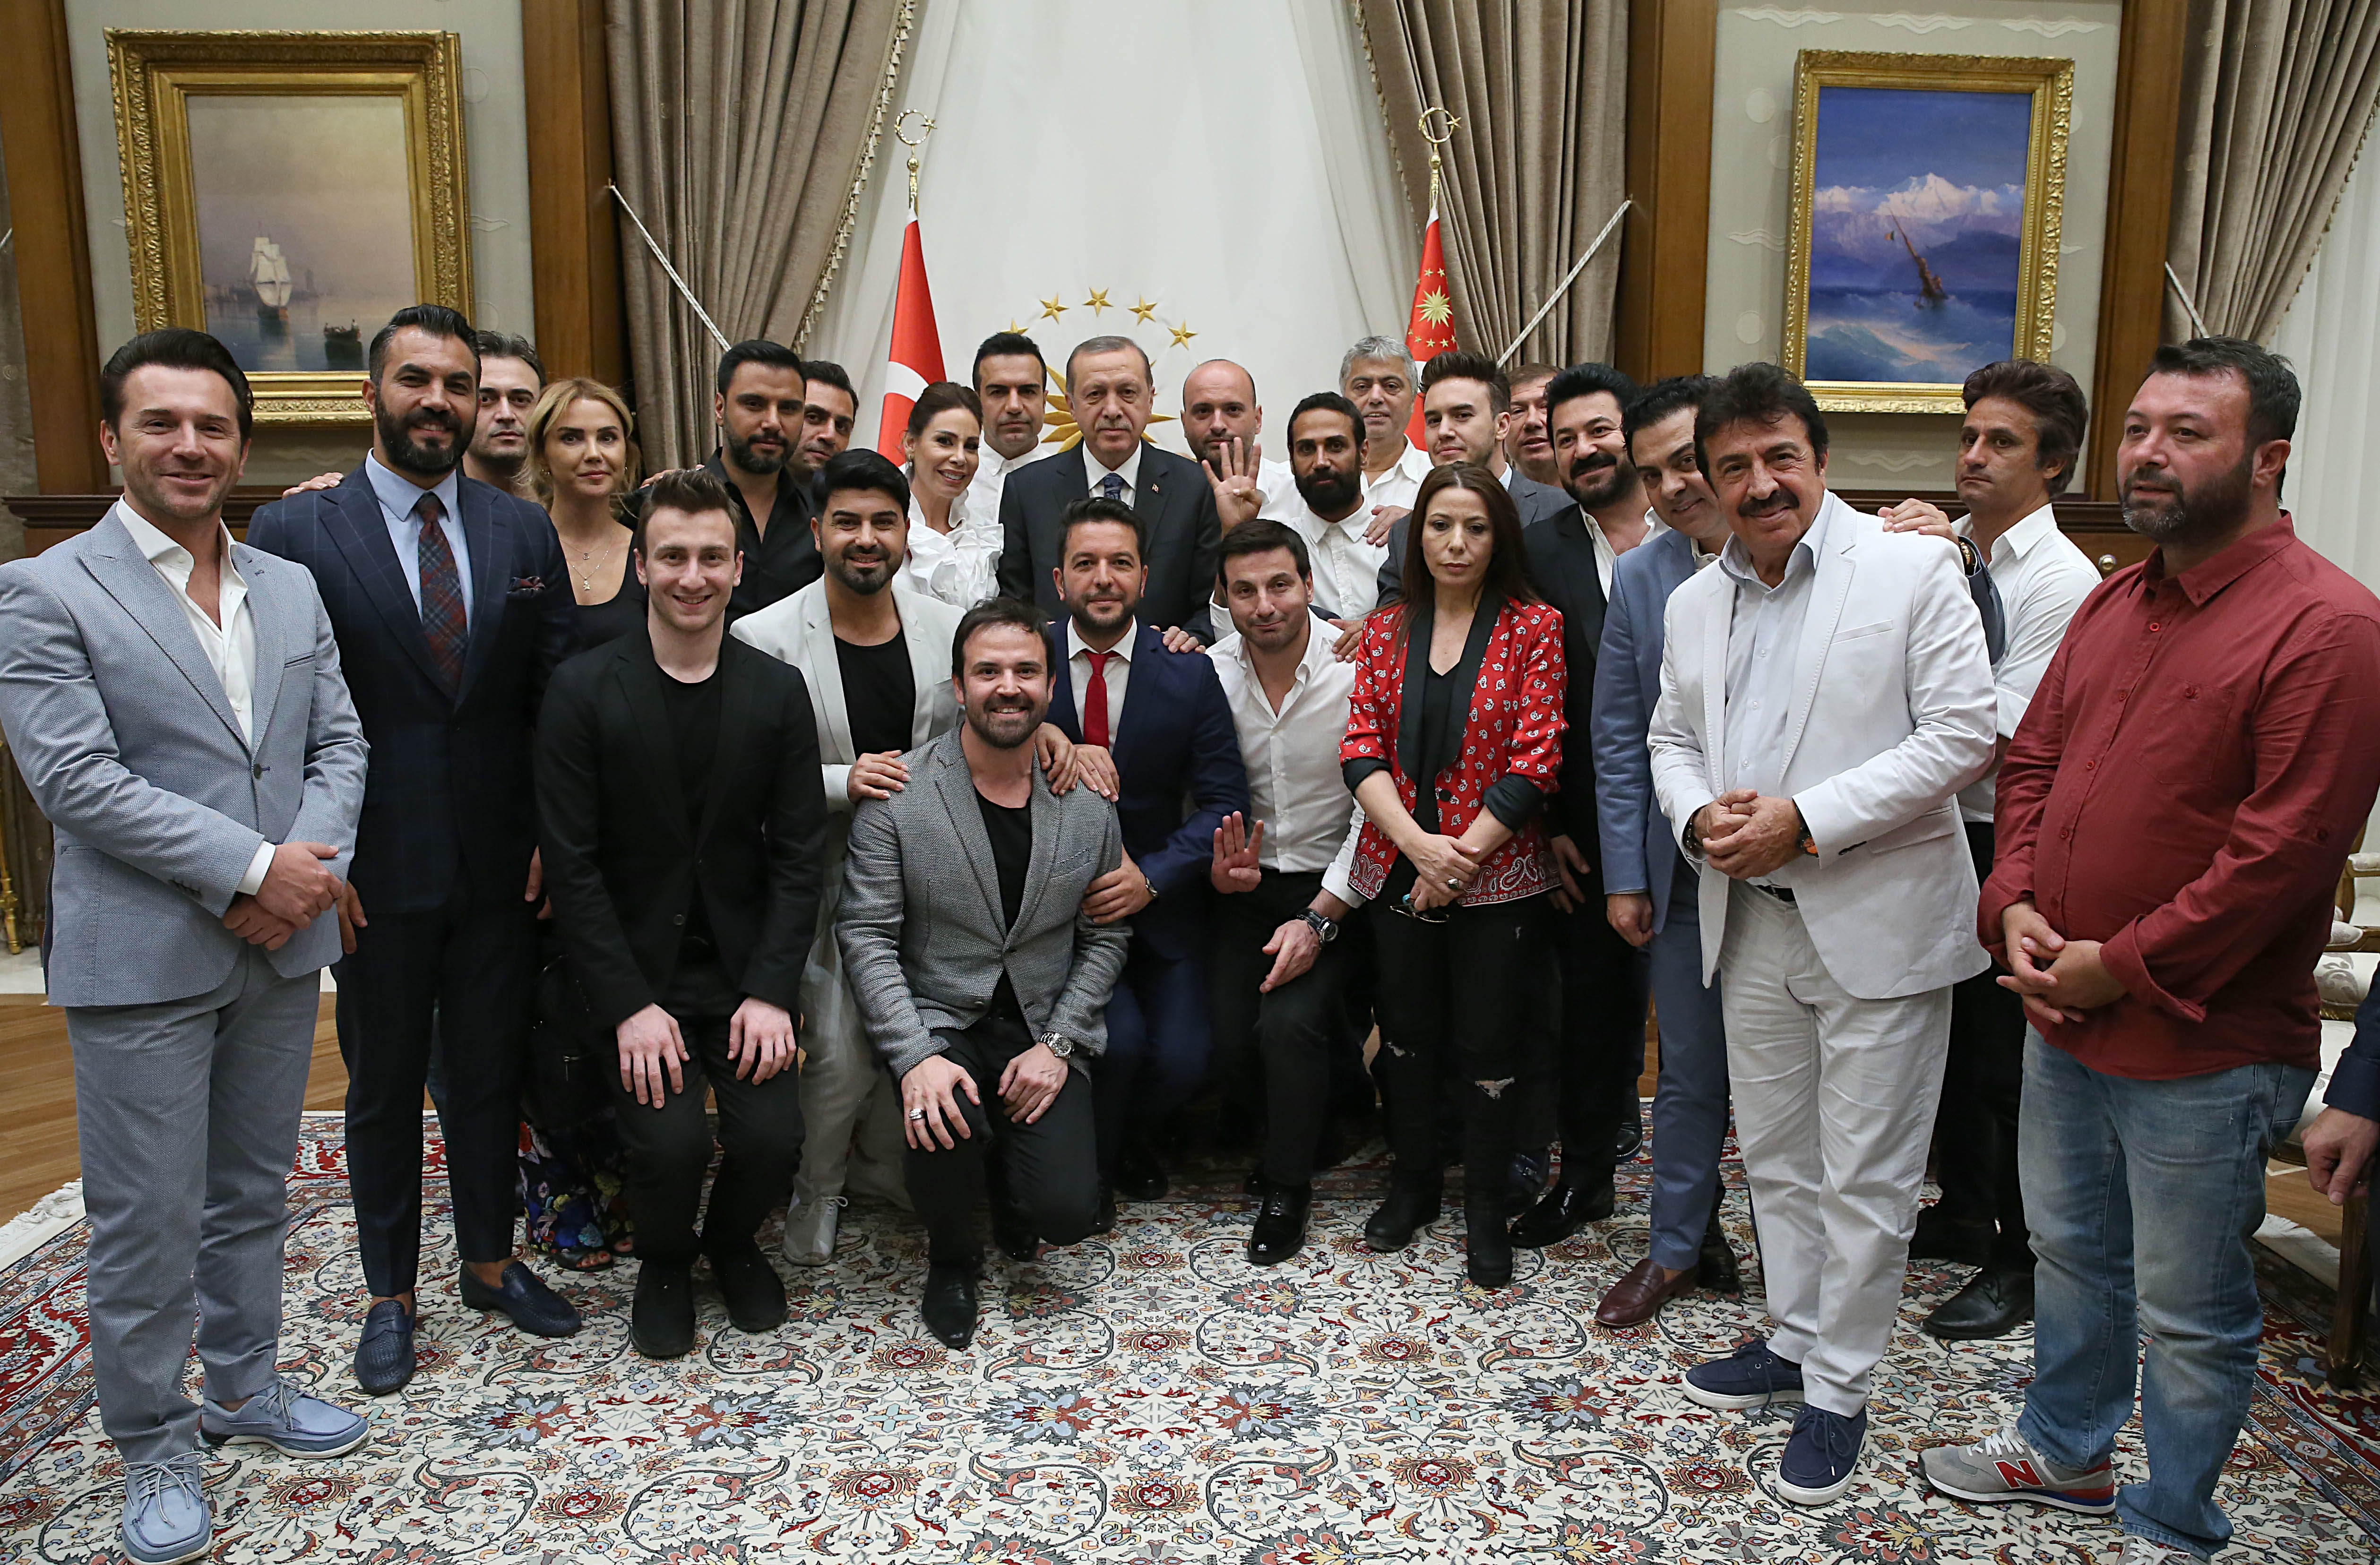 В конце приема была сделана памятная фотография с президентом Эрдоганом.